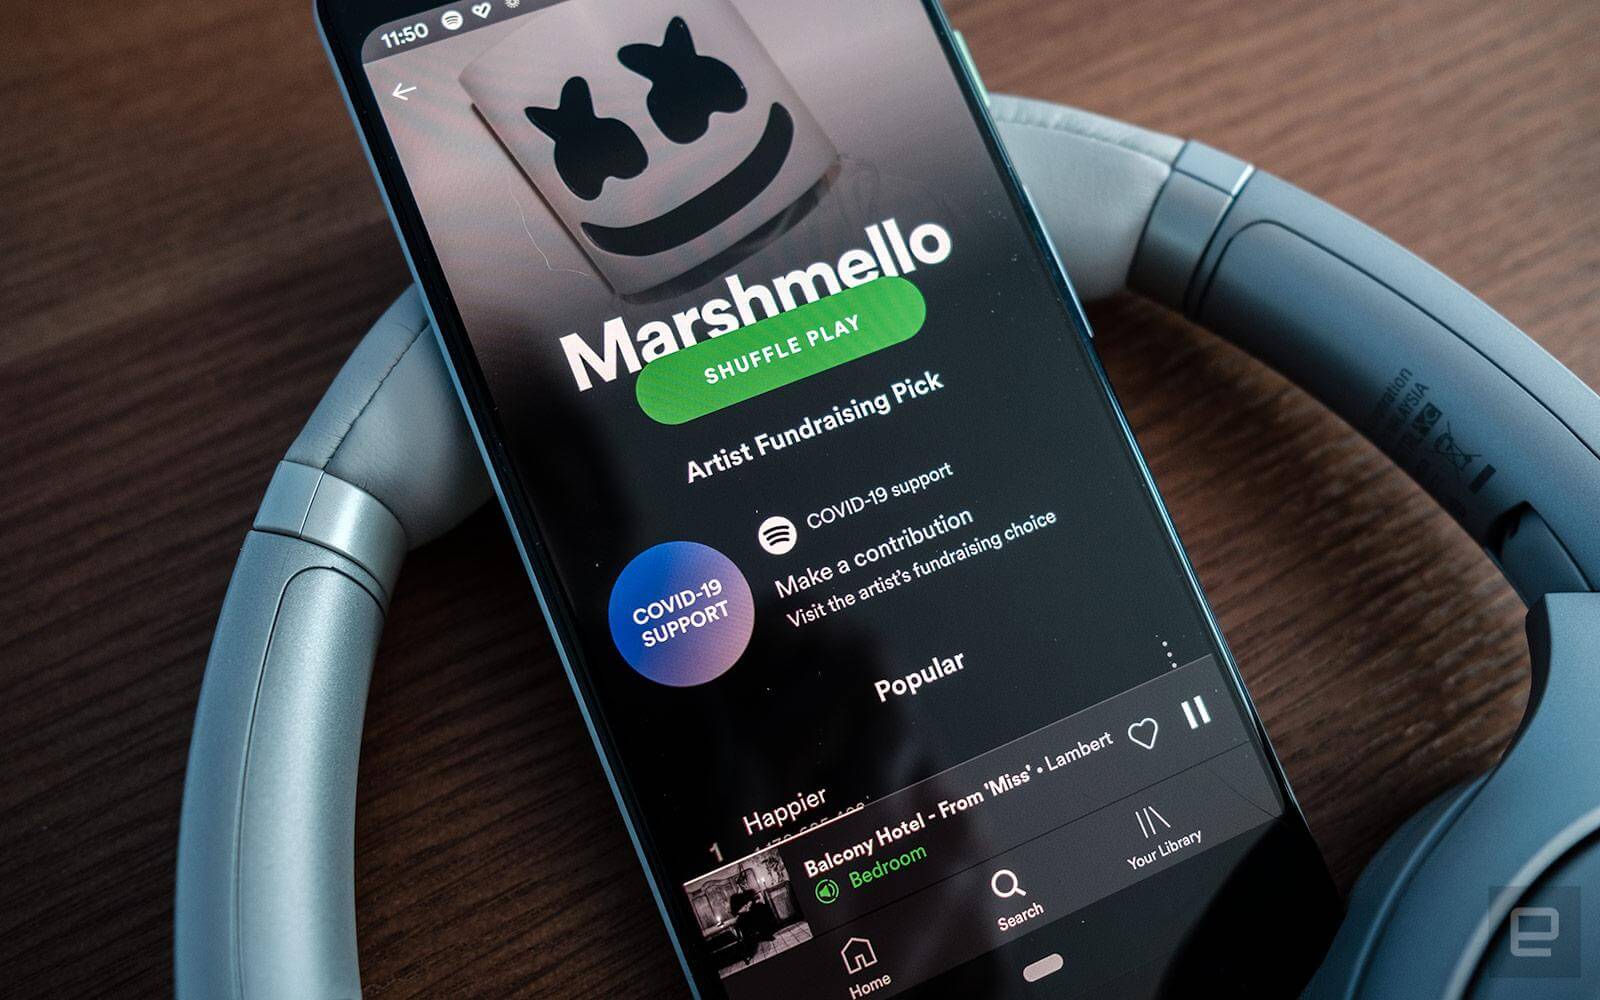 Tampilan profil Marshmello dengan fitur Artist Fundraising Pick baru dari Spotify